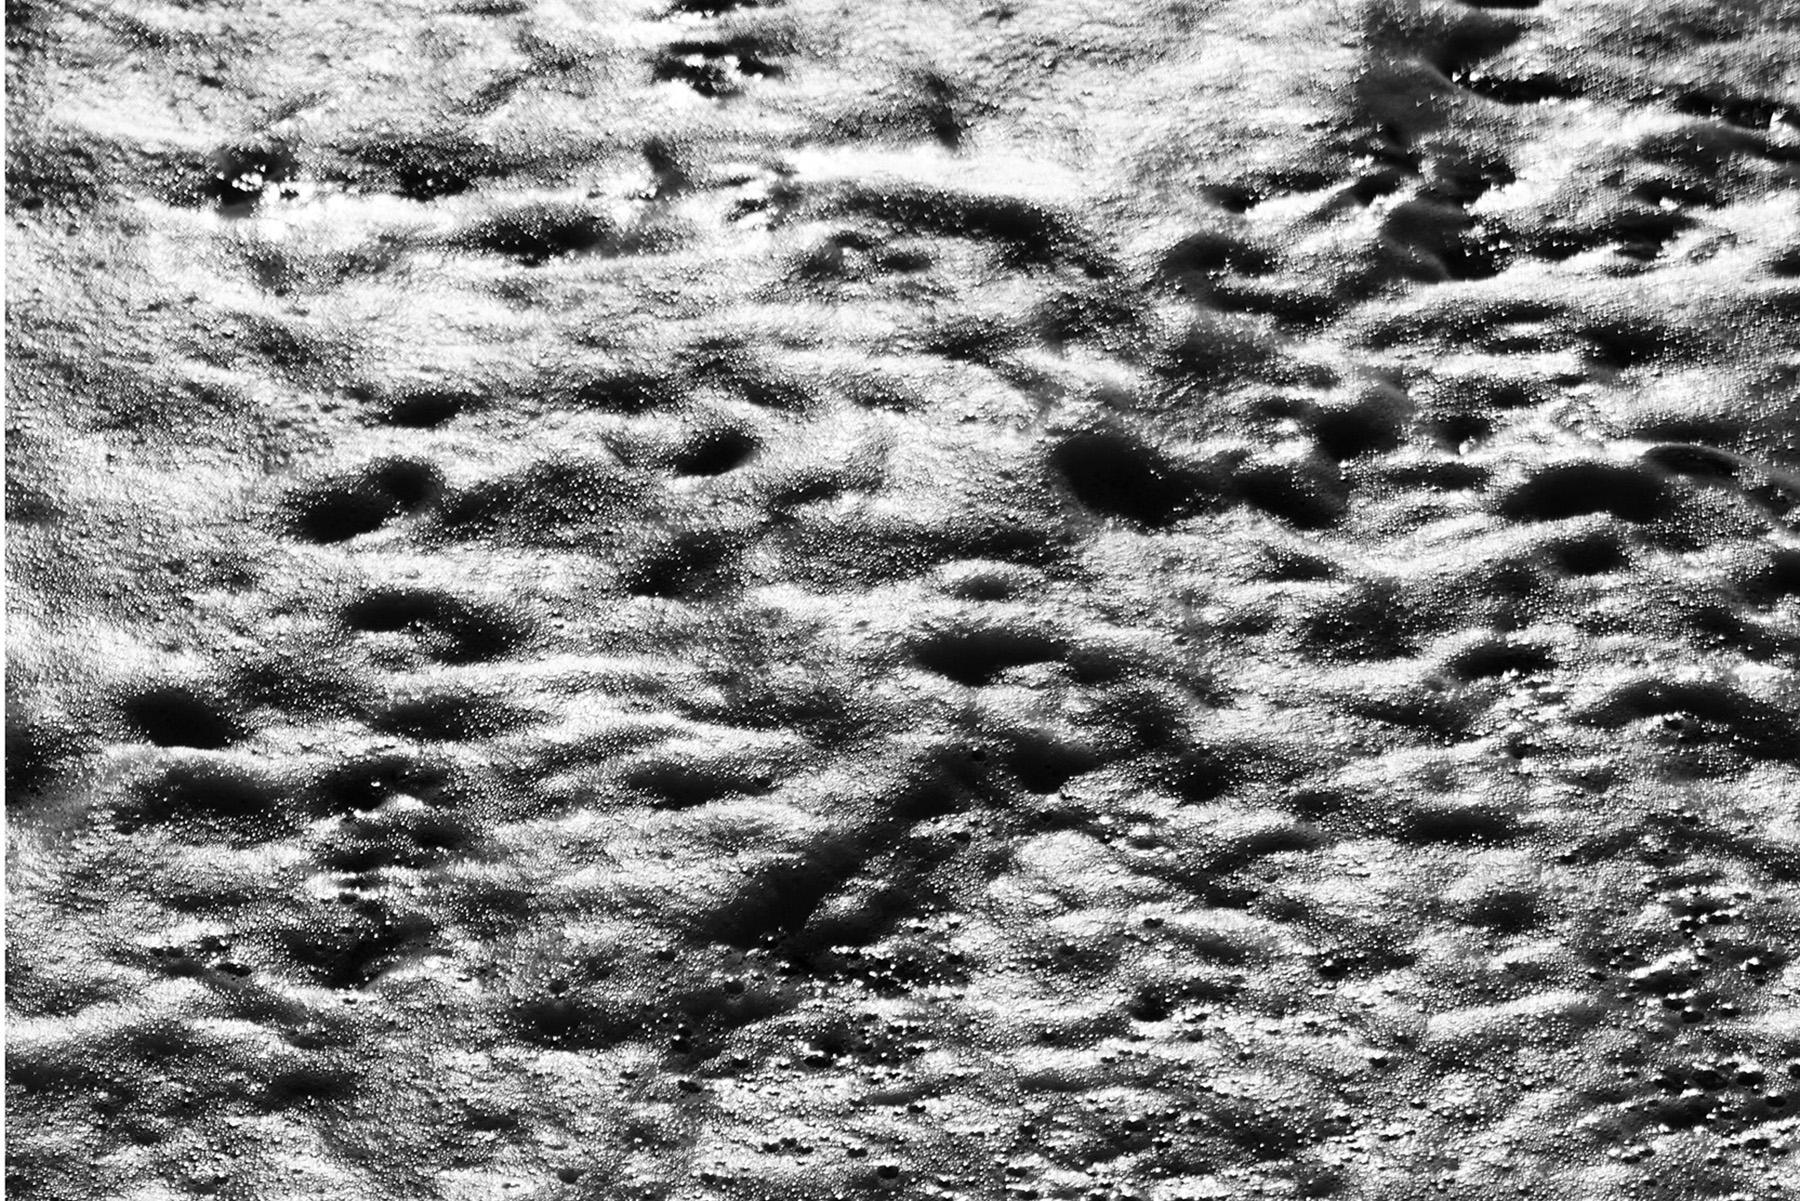 Grand paysage marin vertical noir et blanc de chauve-souris Foamy, style Sugimoto, chaussure - Noir Landscape Photograph par Kind of Cyan